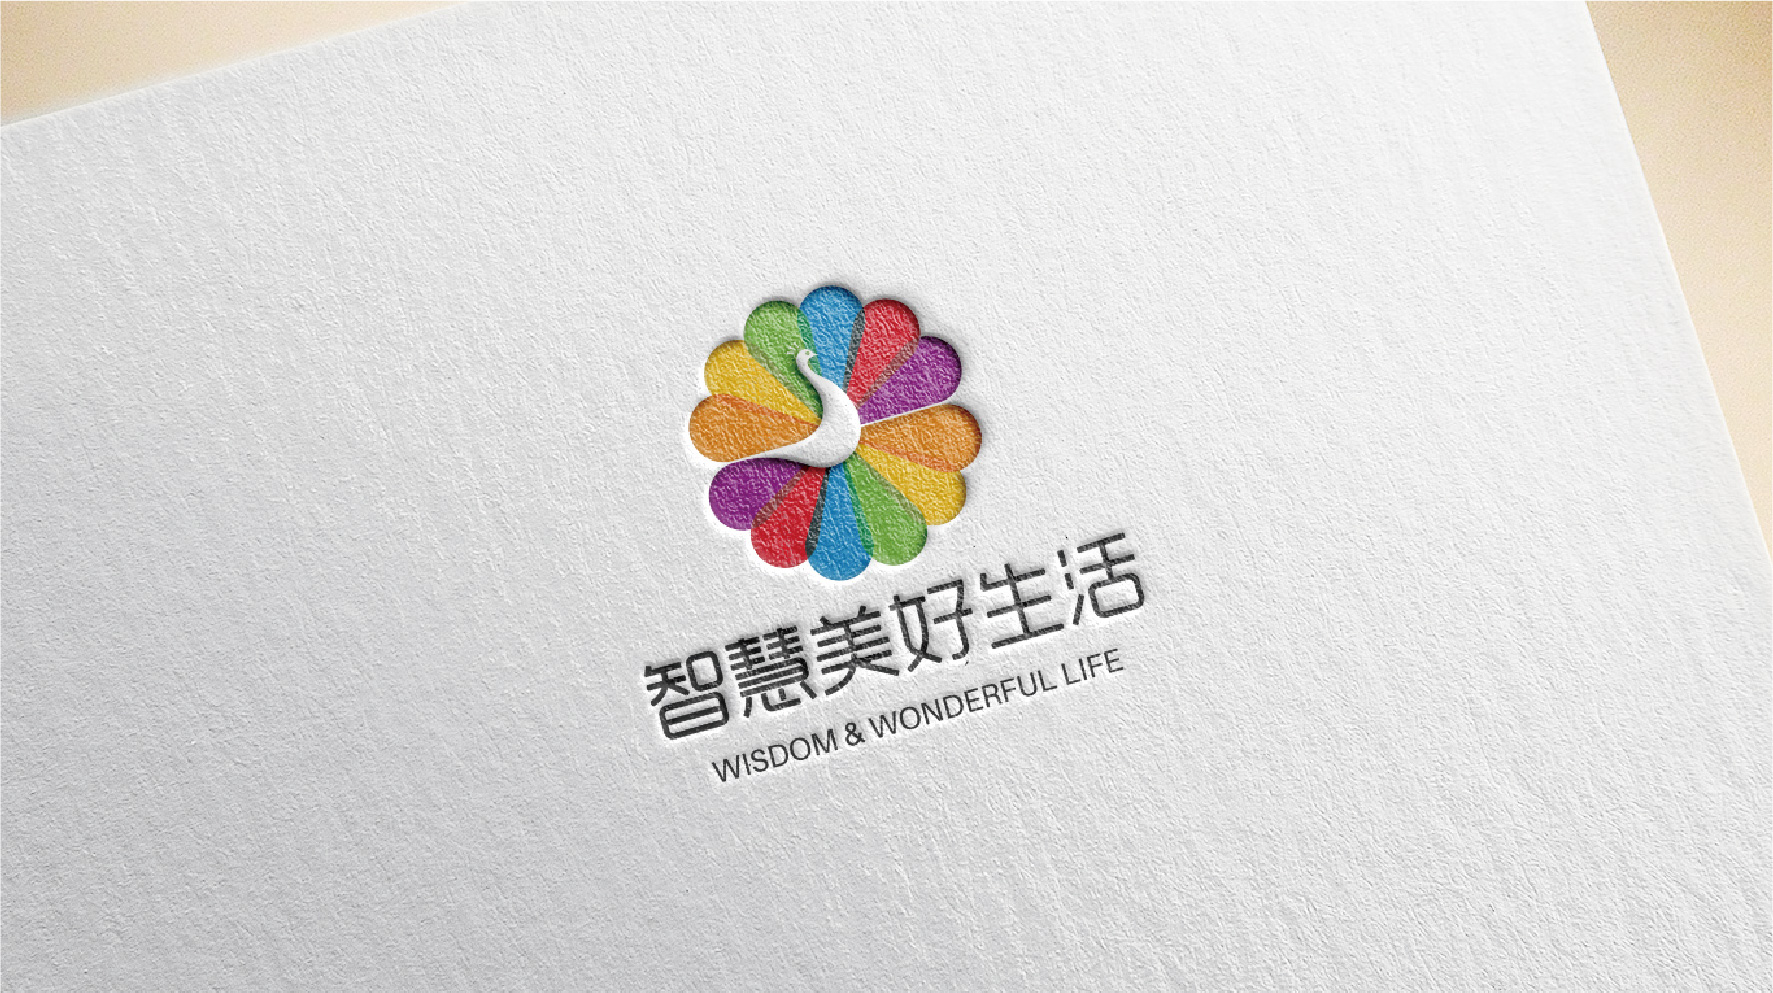 深圳养生logo设计-智慧美好生活标志设计19.jpg